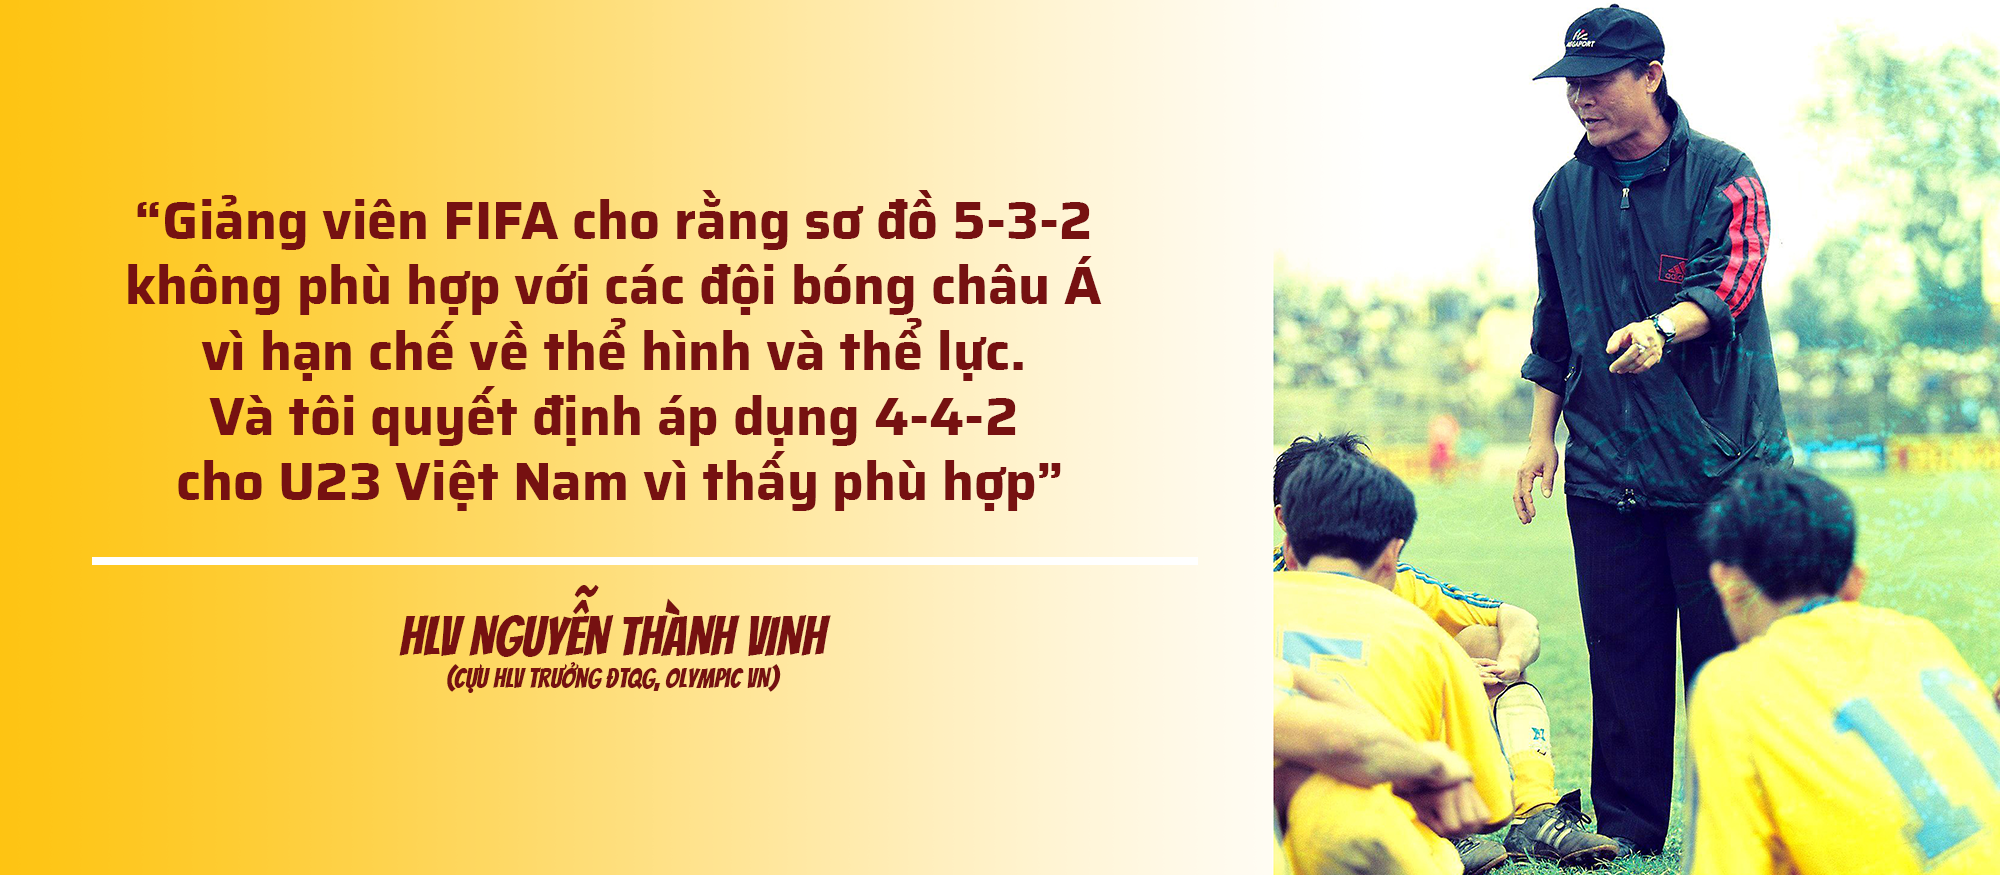 HLV Nguyễn Thành Vinh là người đã mạnh dạn áp dụng 4-4-2 cho U23 Việt Nam (ĐTQG) khi tạm quyền dẫn dắt đội tuyển. Đồ họa: TK